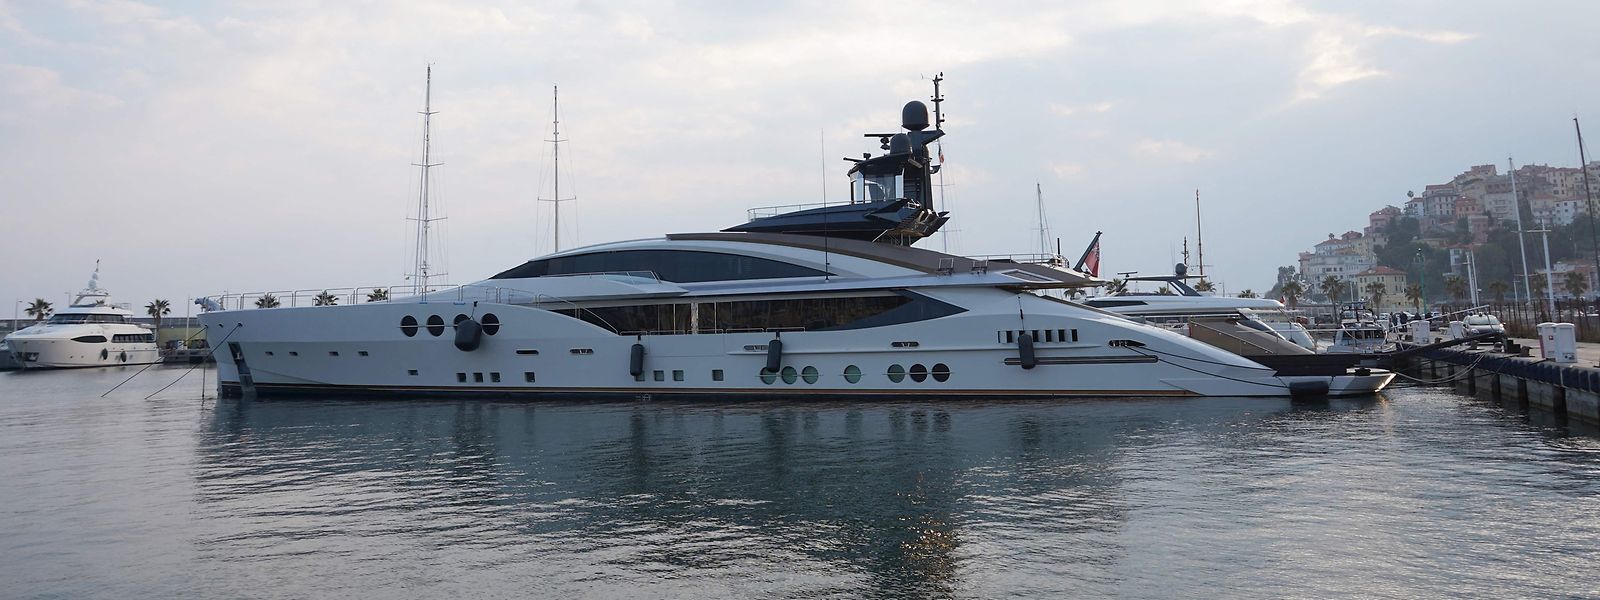 Wurde am Freitag in Italien beschlagnahmt: Mordaschows Luxusjacht "Lady M".